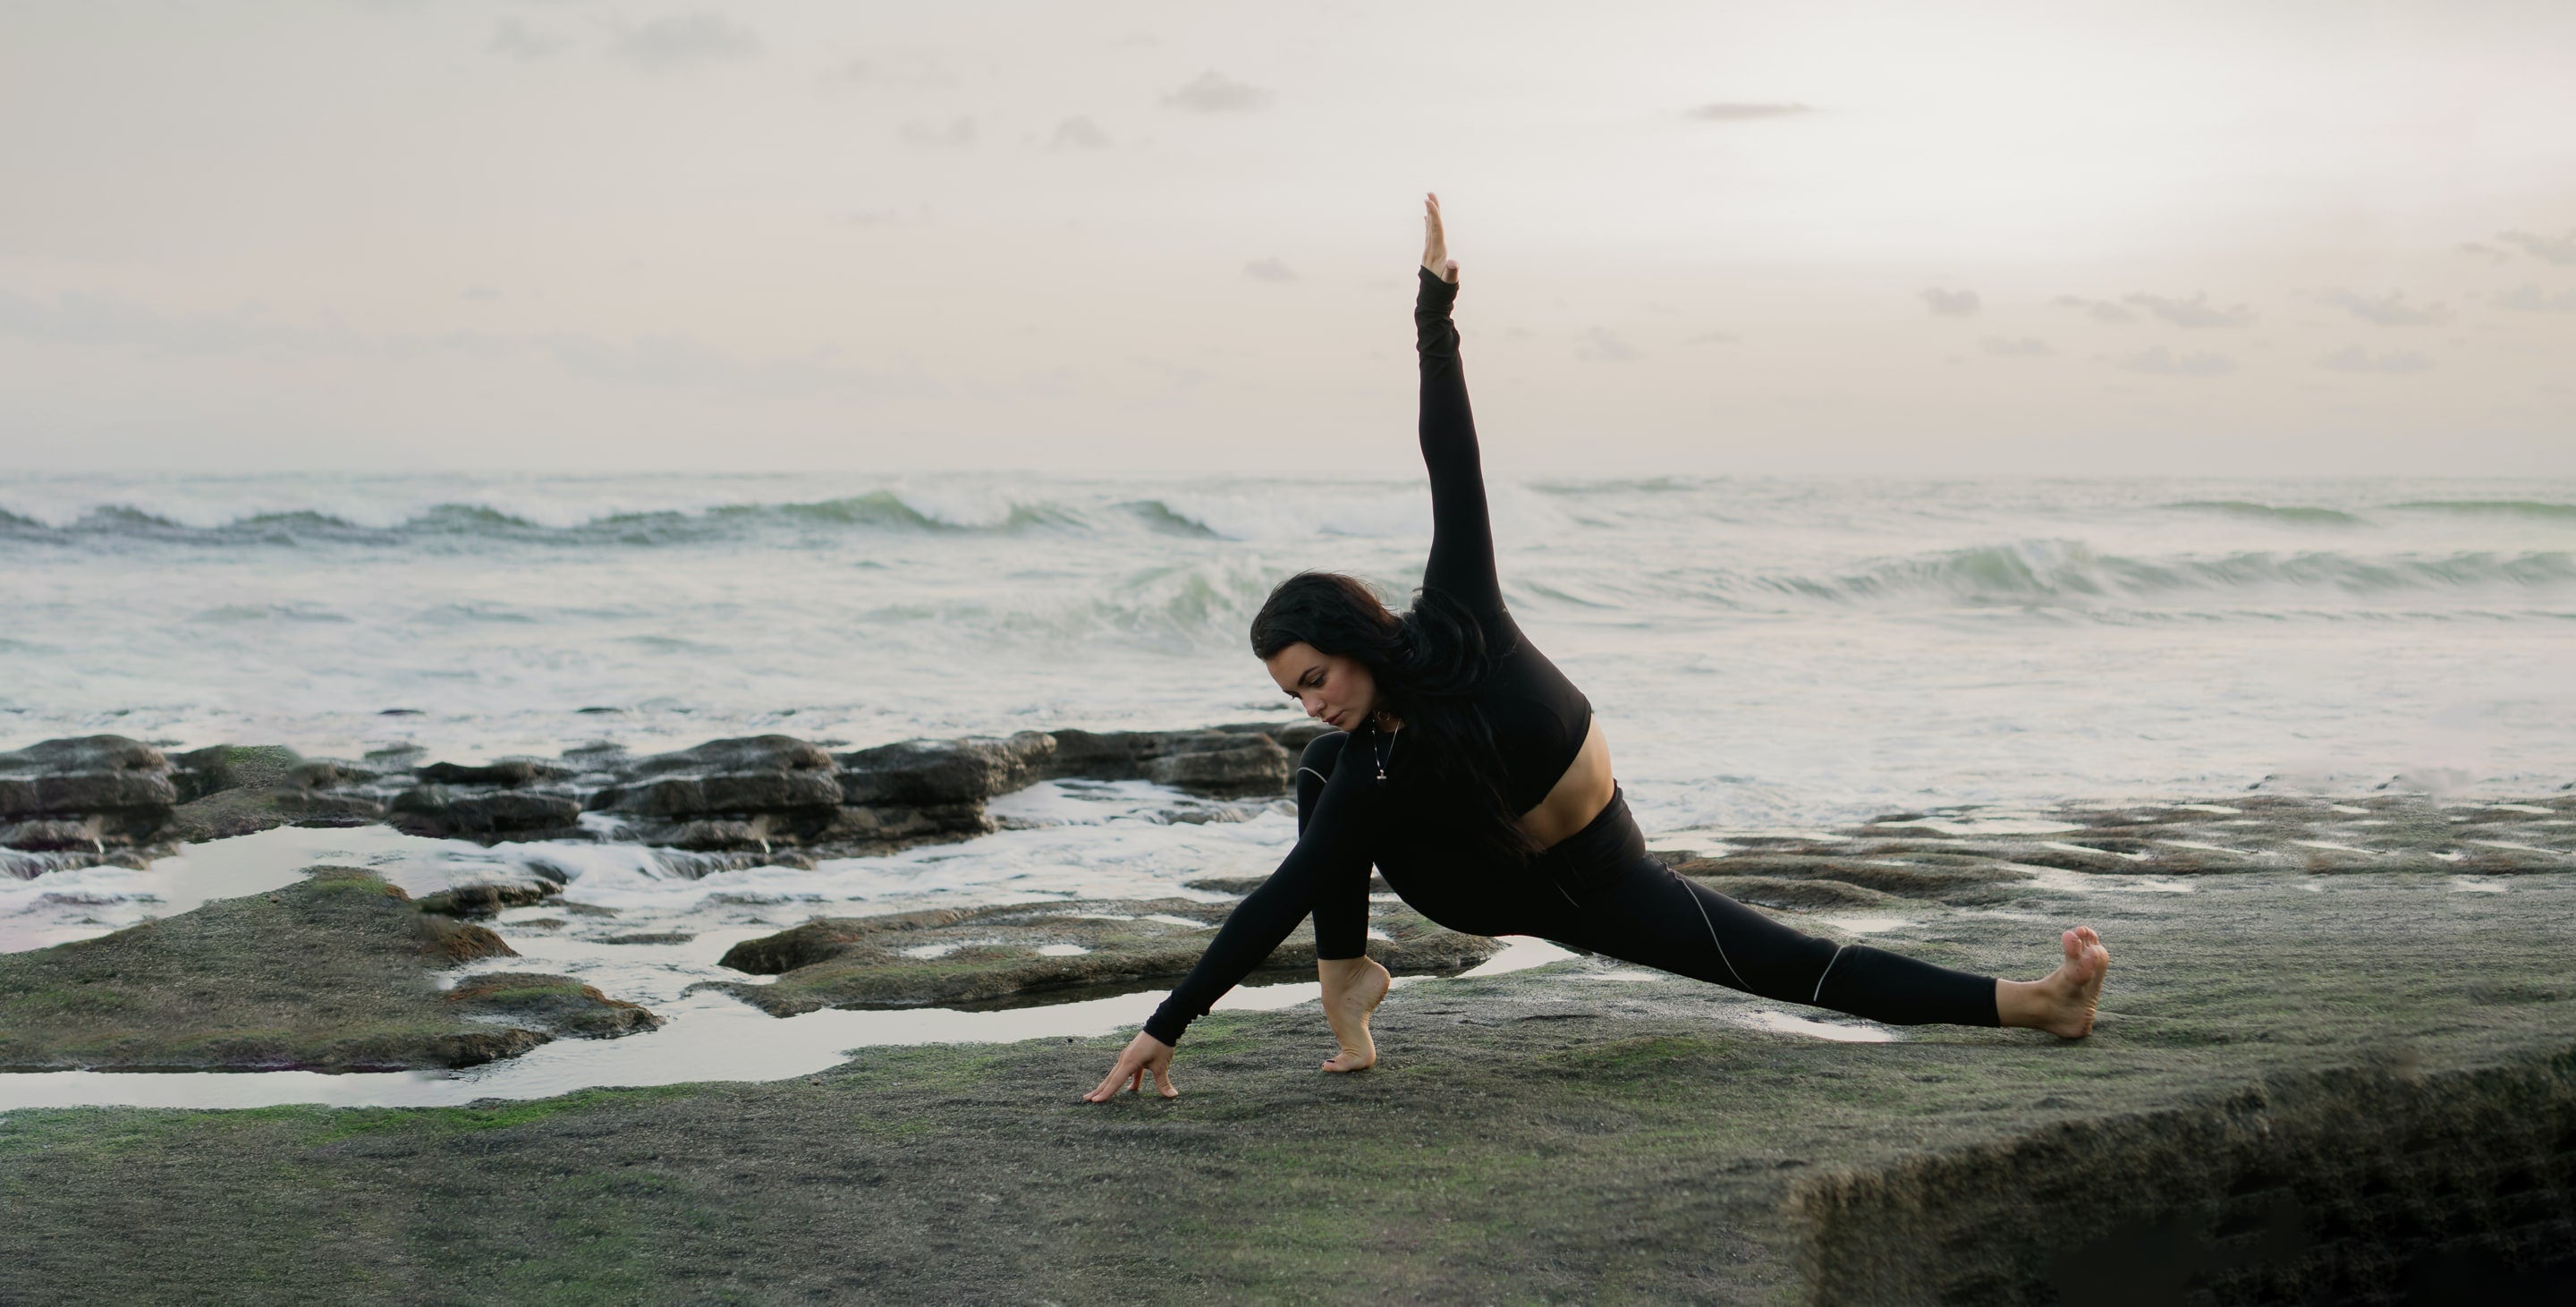 A woman doing yoga on rocks near the ocean.